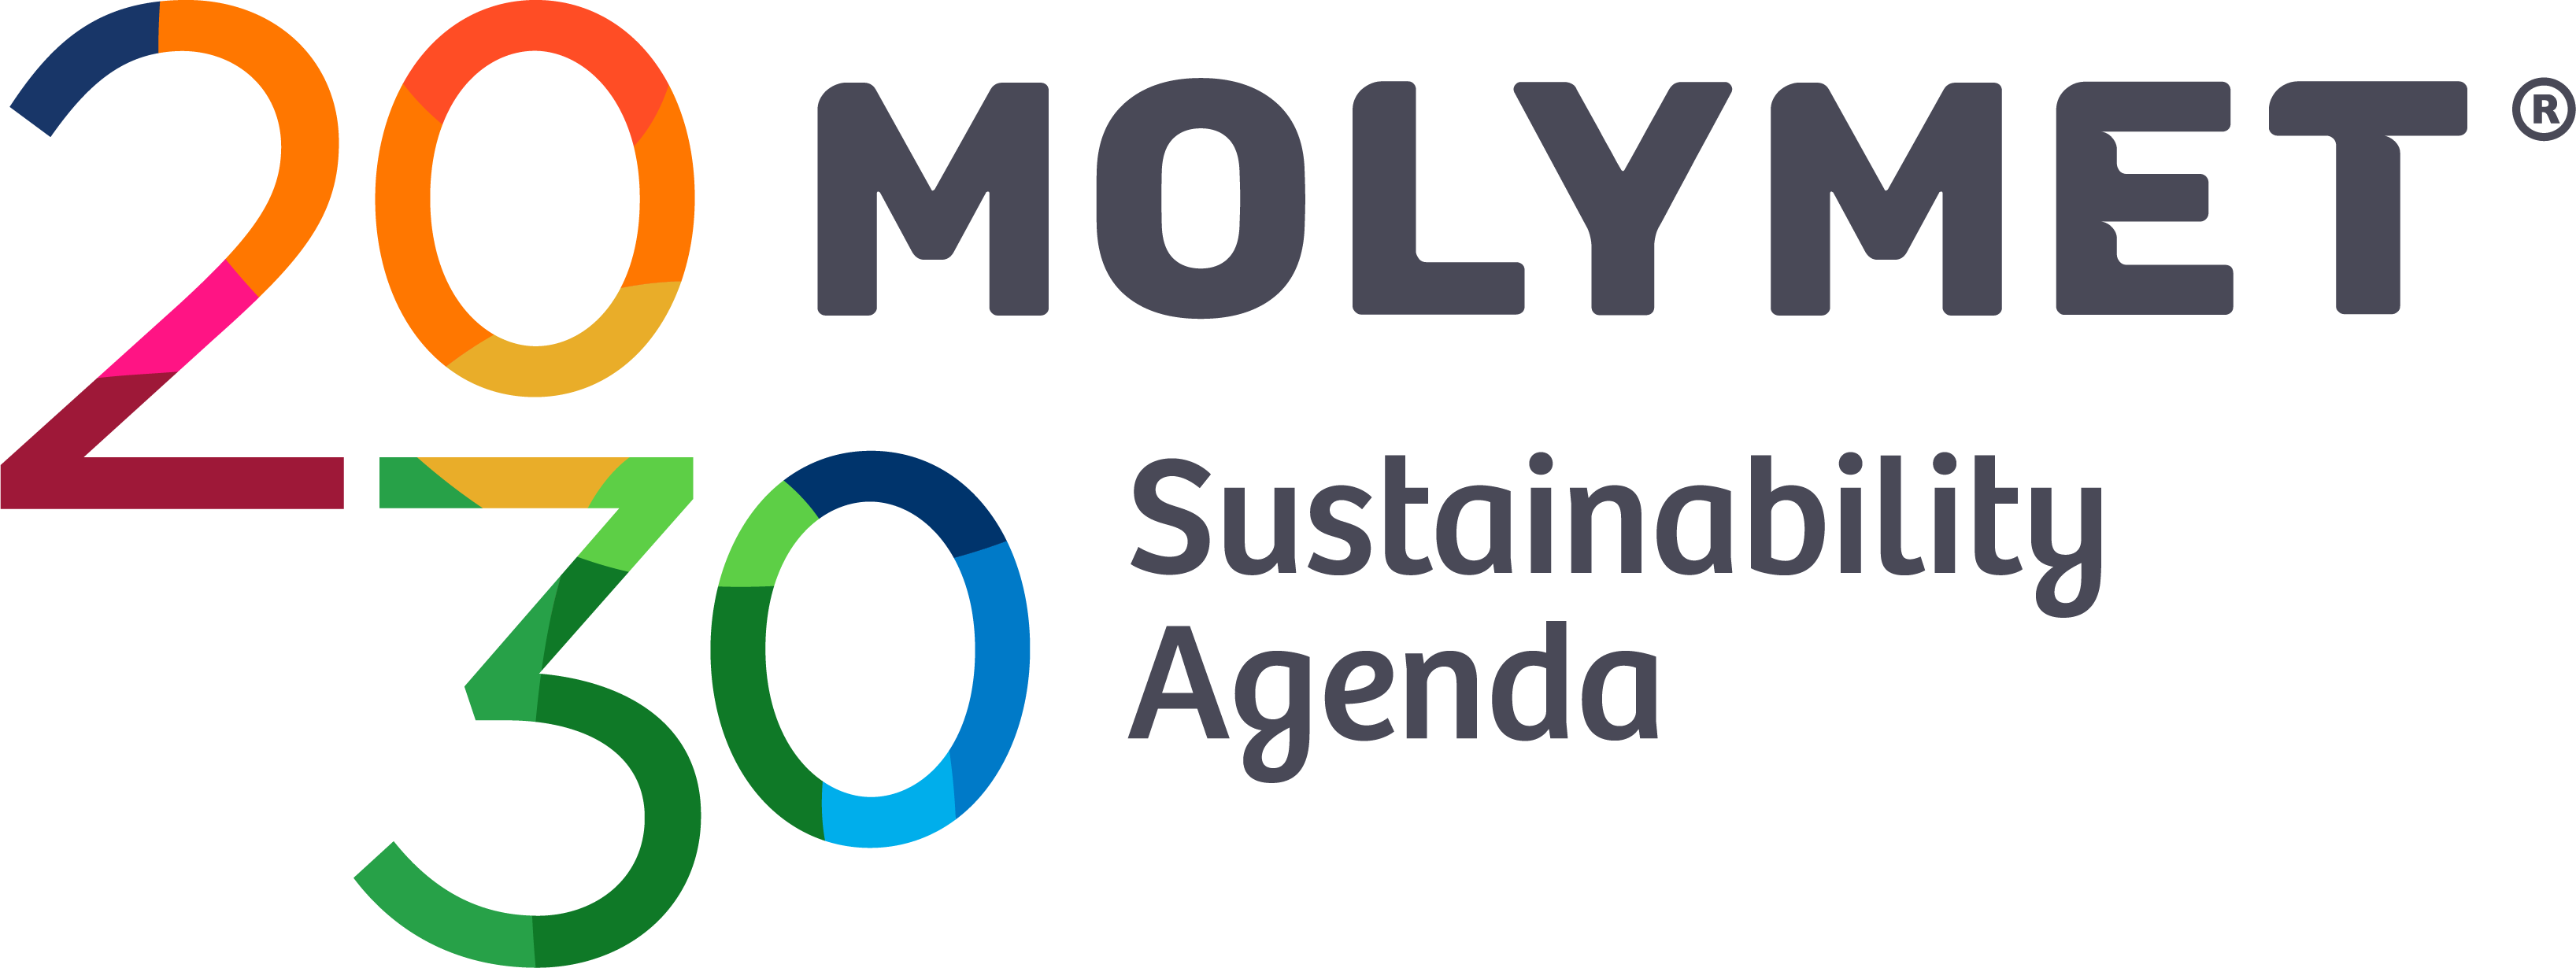 Logo Molymet - Agenda de Sustentabilidad 2030